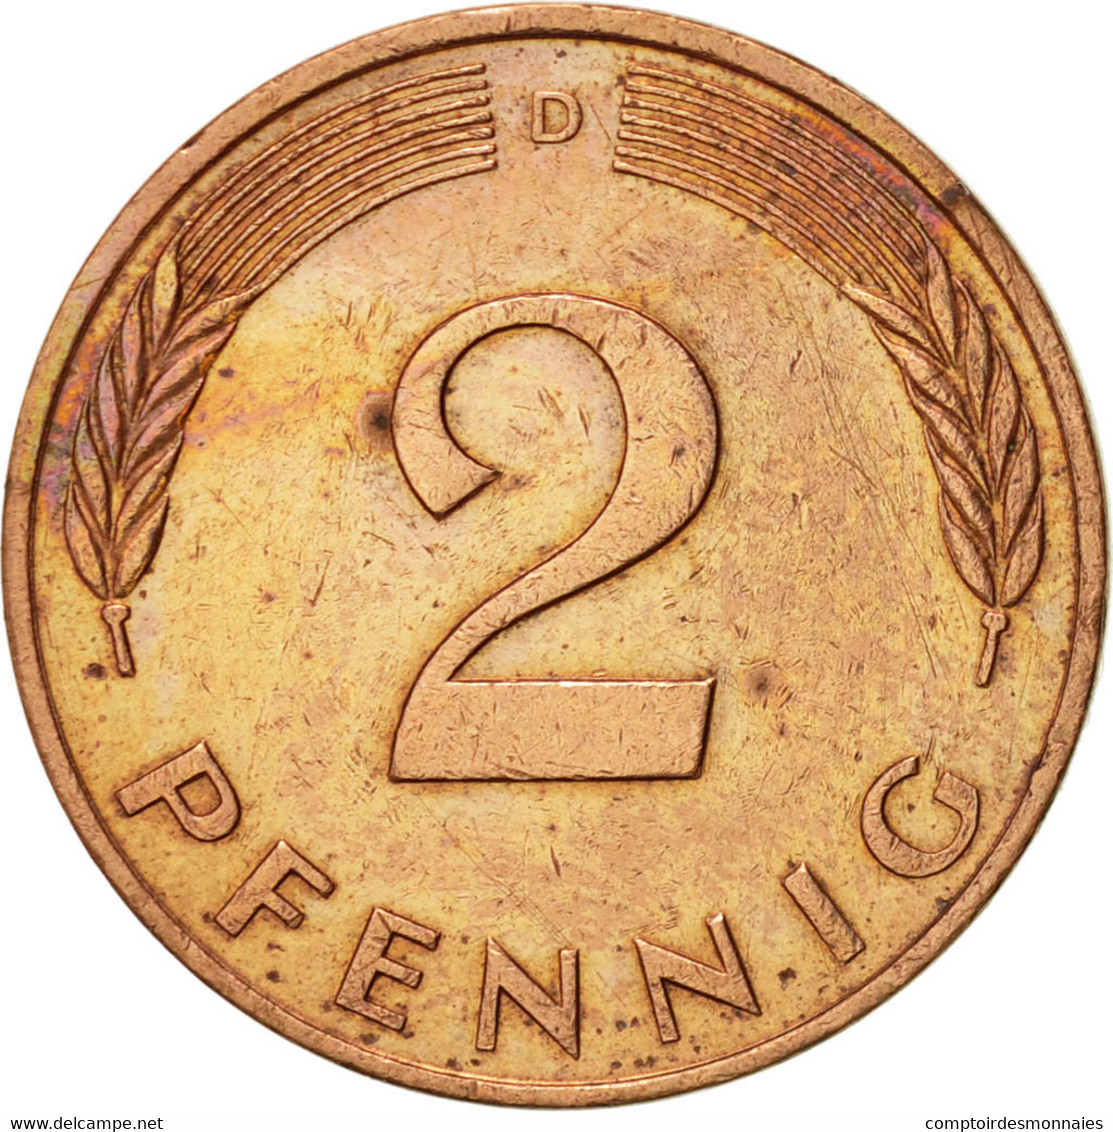 Monnaie, République Fédérale Allemande, 2 Pfennig, 1991, Munich, SUP, Copper - 2 Pfennig